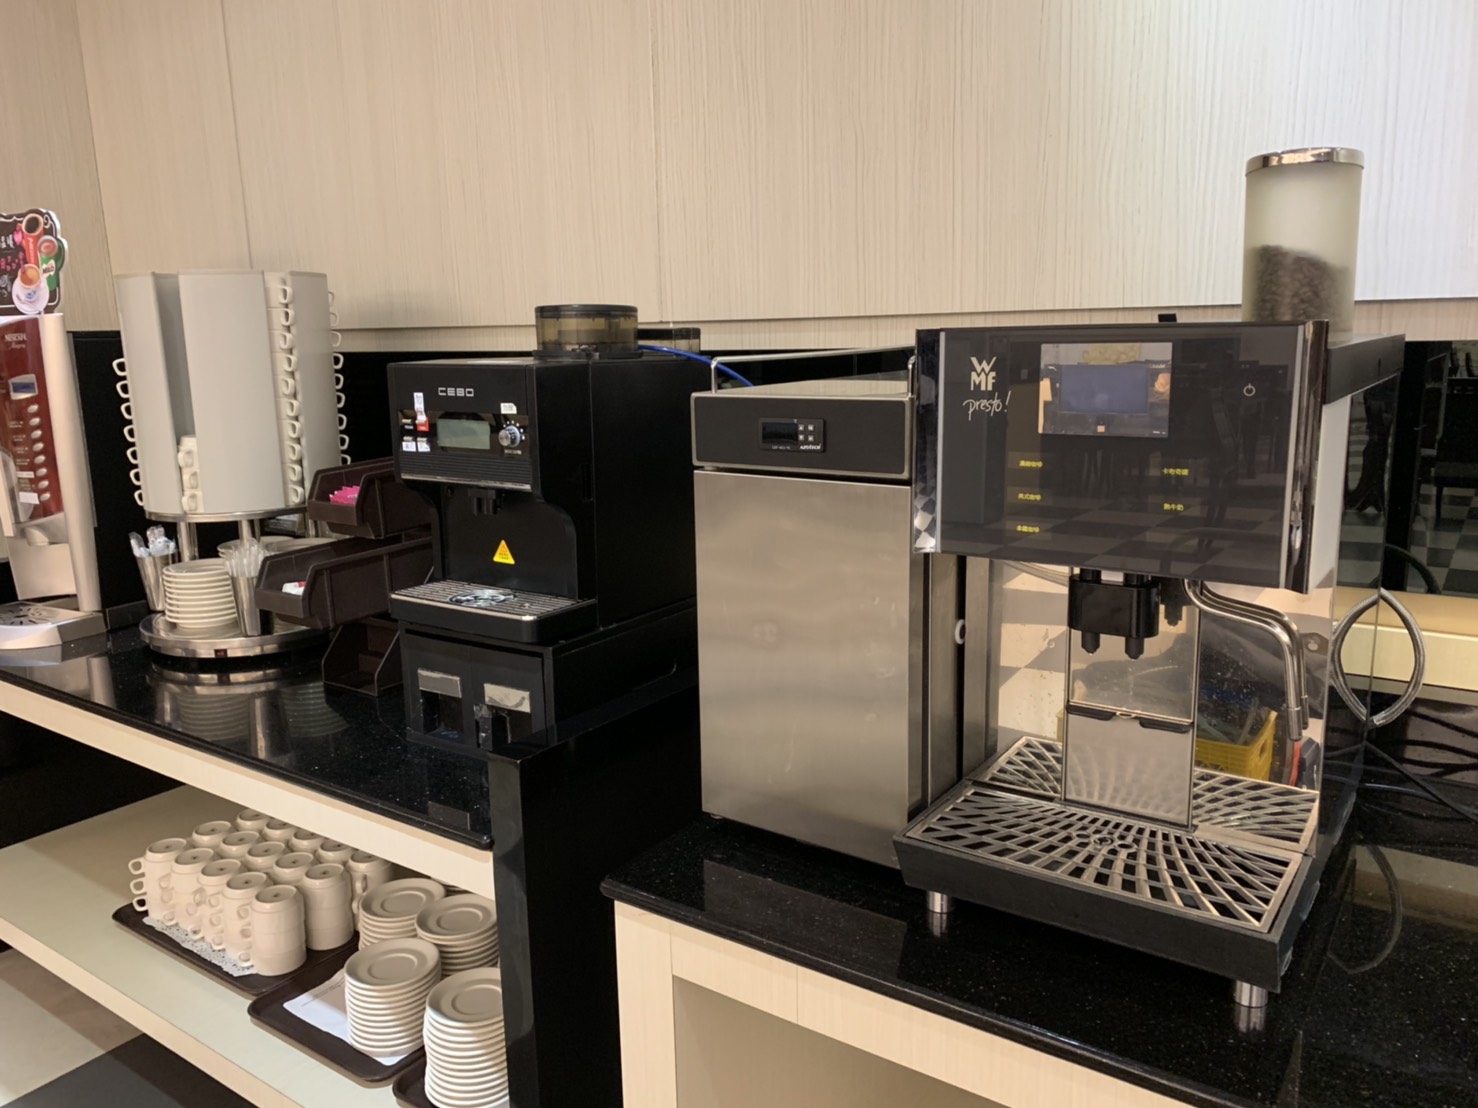 台南 嘉義 飯店 presto WMF 全自動咖啡機 租 買賣 維修 超商咖啡機